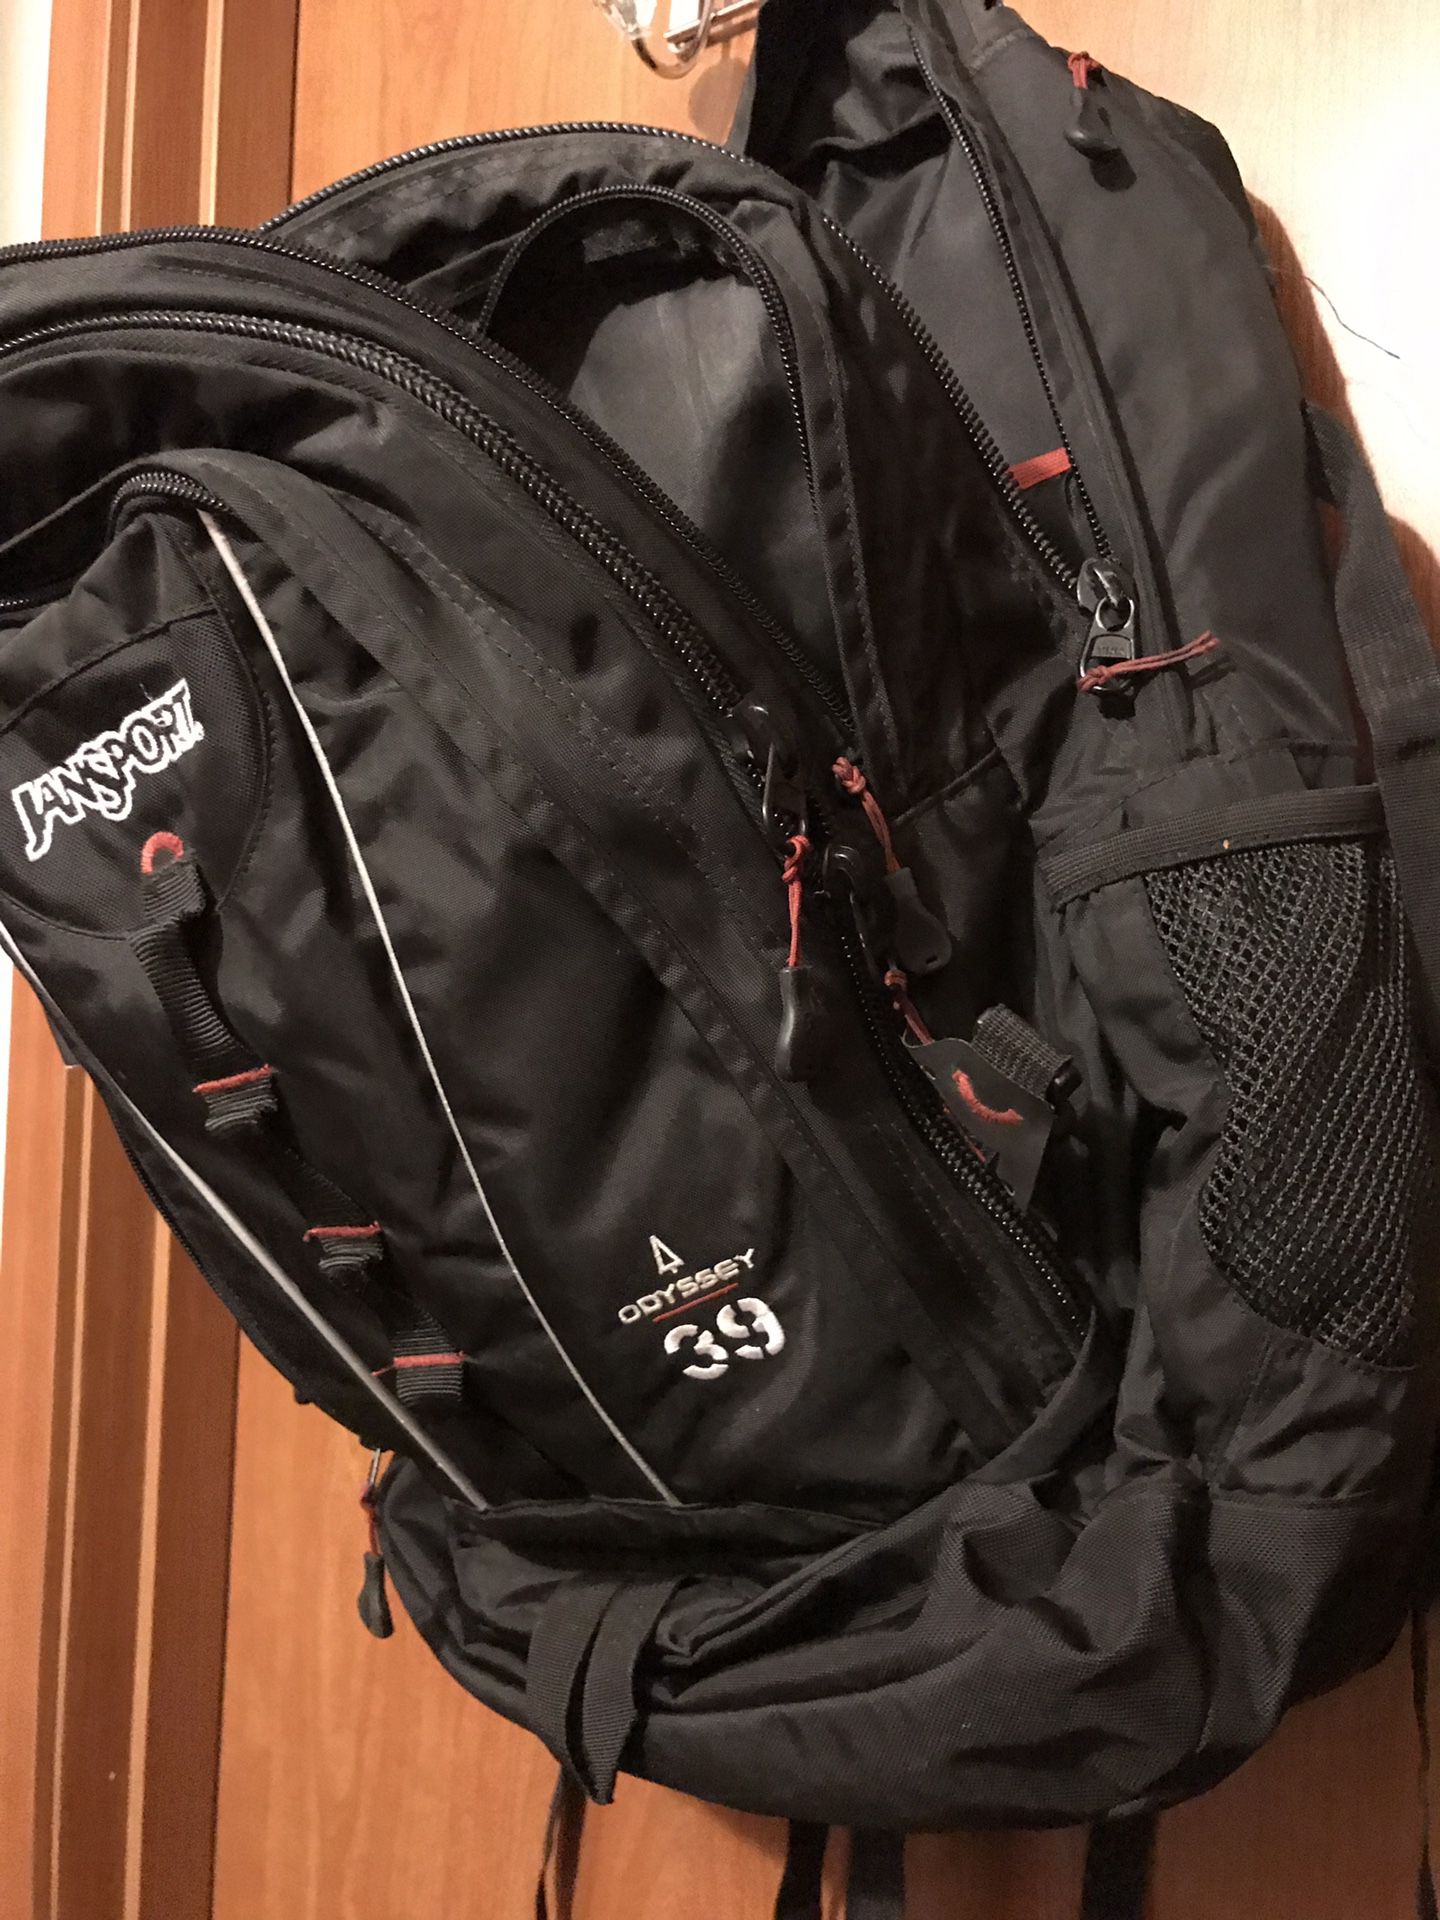 Jansport: Odyssey 39 backpack